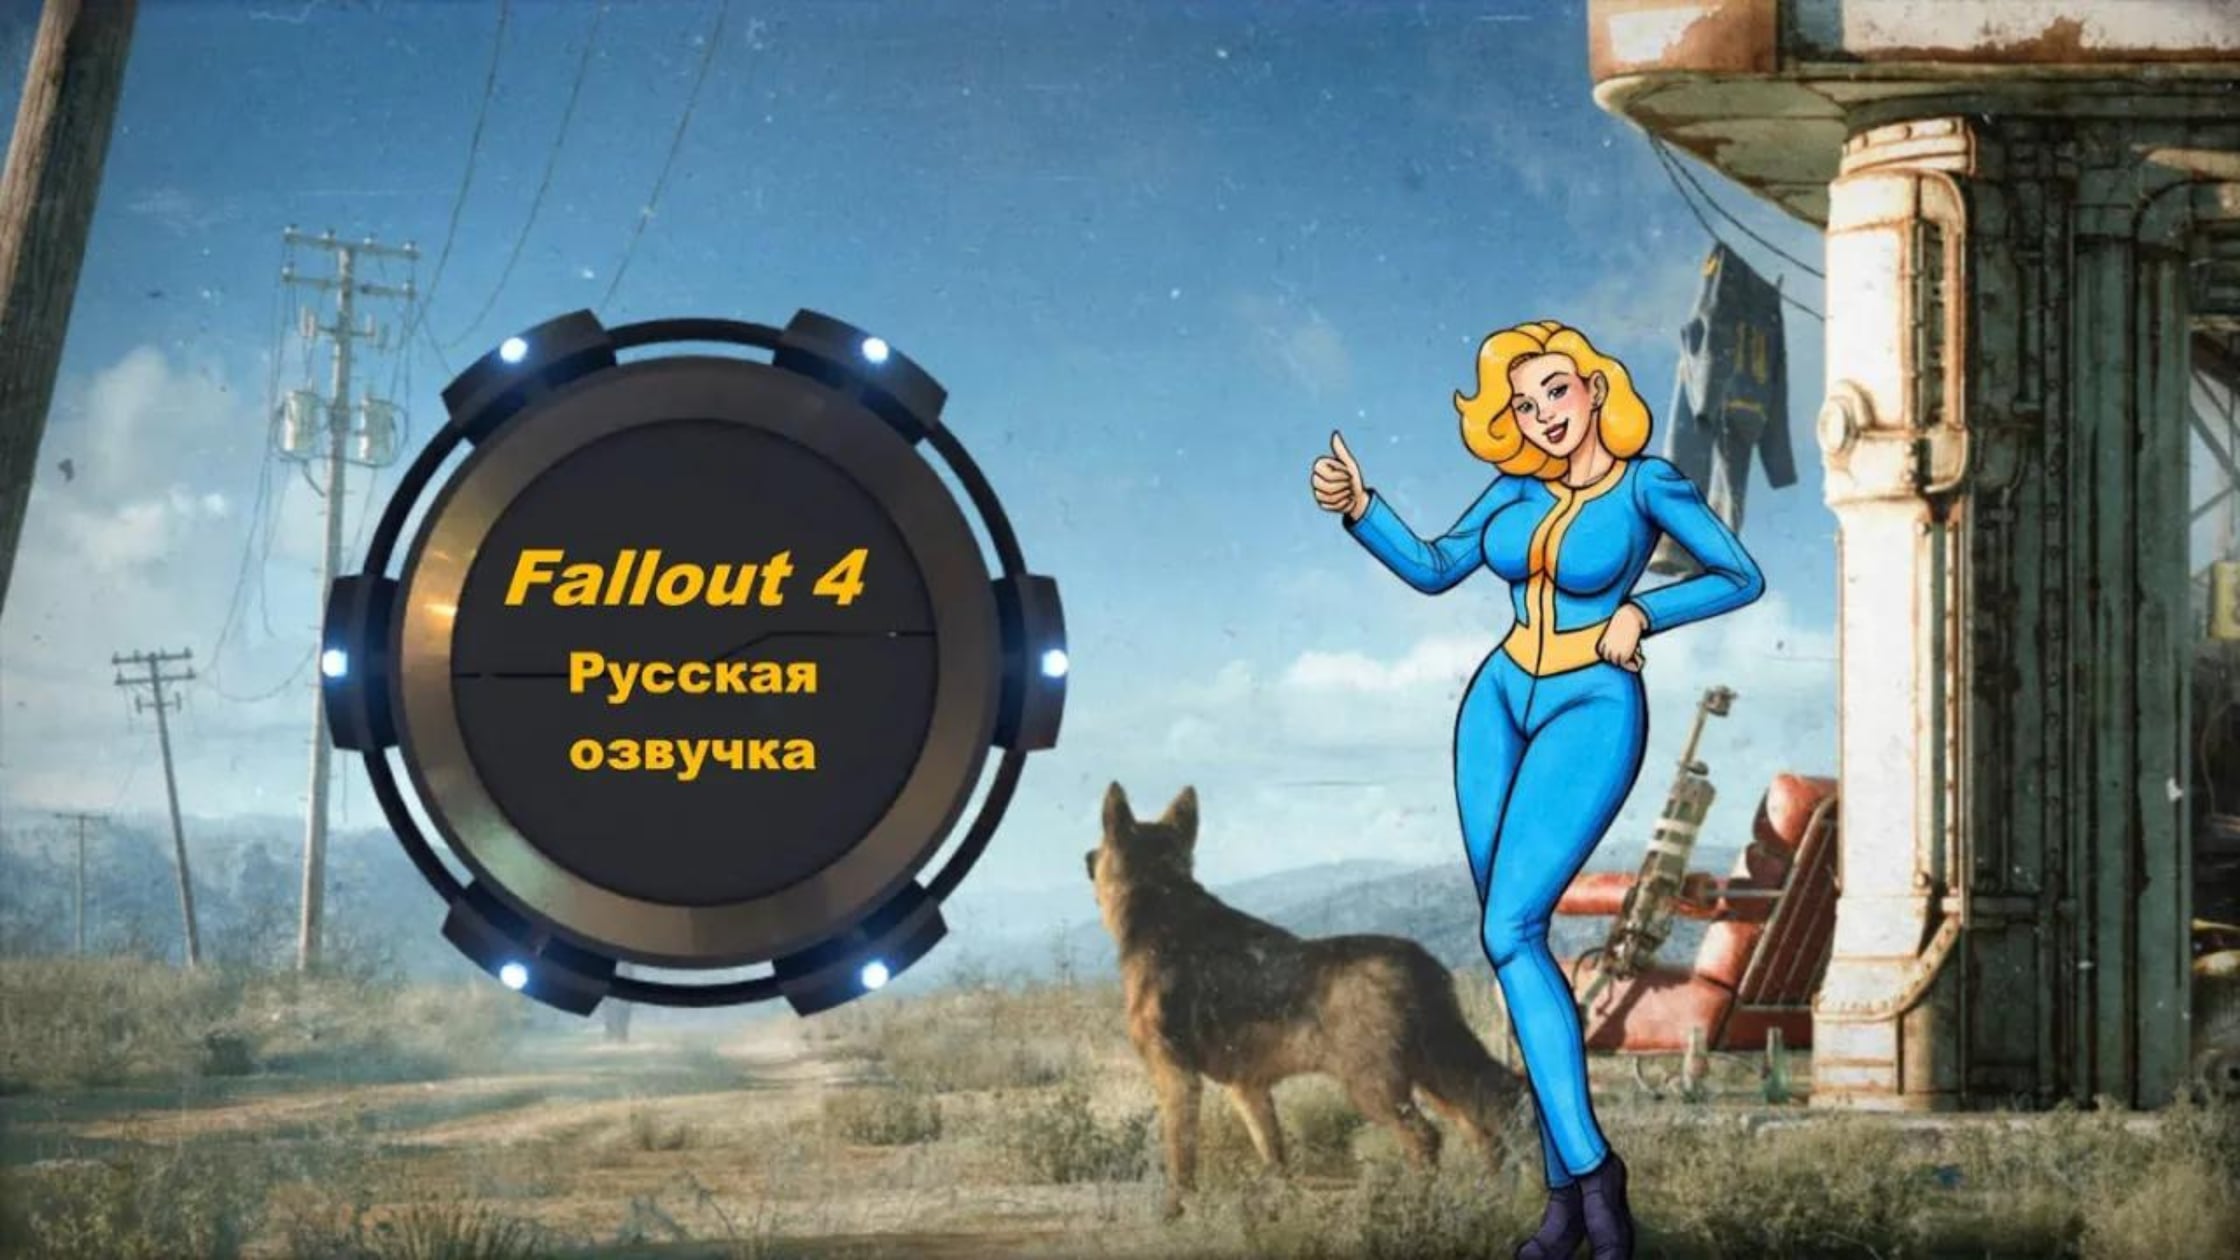 озвучка fallout 4 cool games установка фото 4